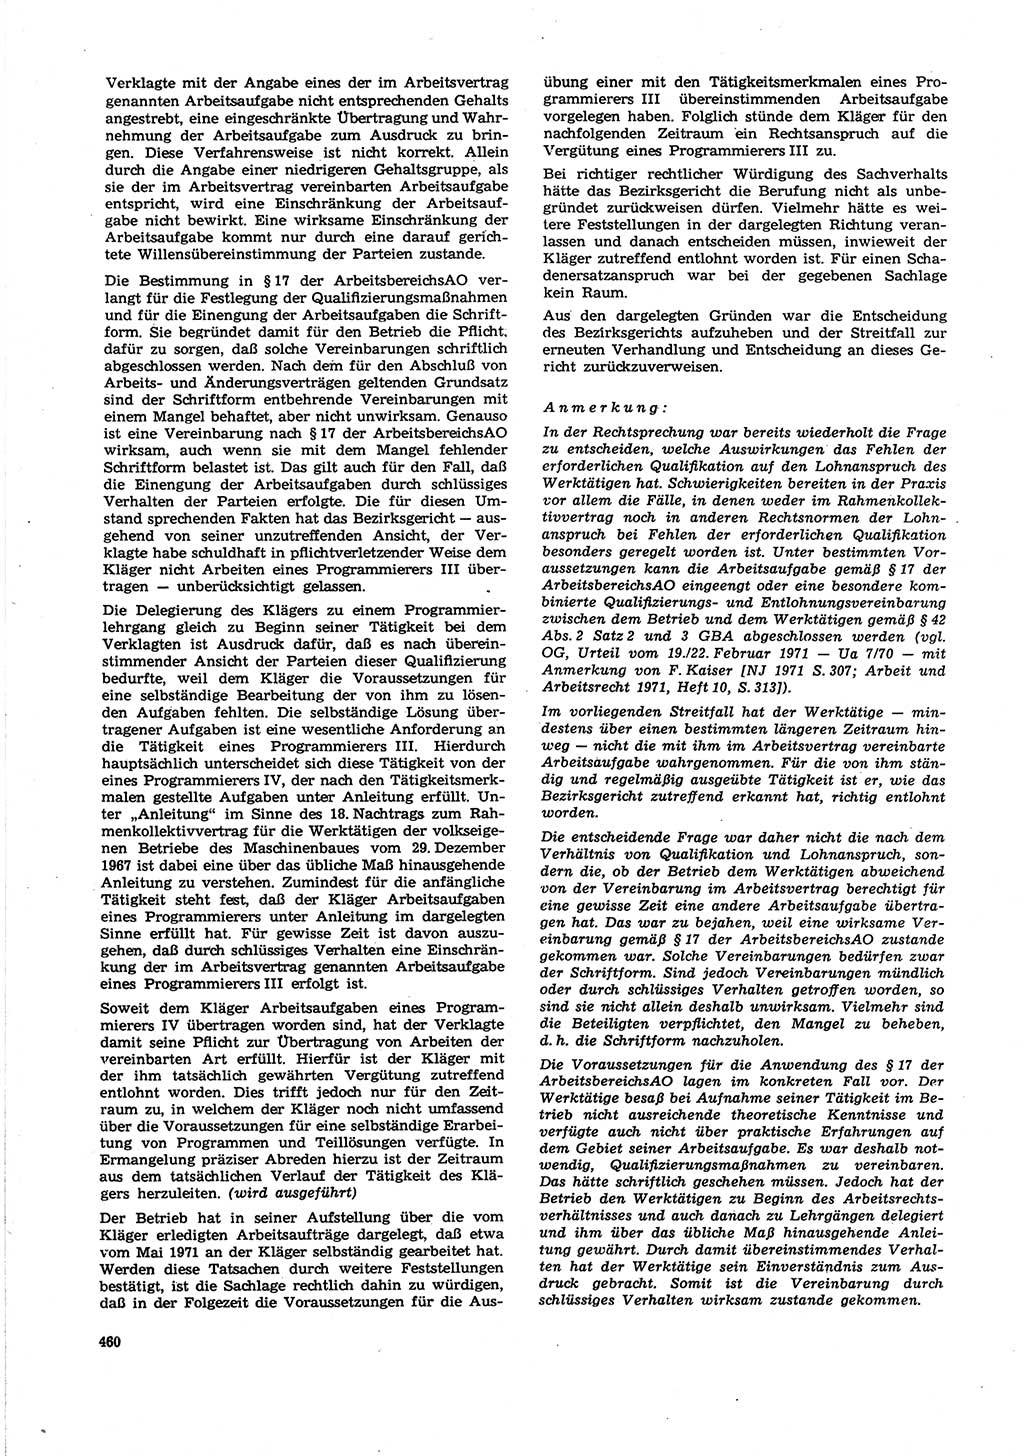 Neue Justiz (NJ), Zeitschrift für Recht und Rechtswissenschaft [Deutsche Demokratische Republik (DDR)], 27. Jahrgang 1973, Seite 460 (NJ DDR 1973, S. 460)